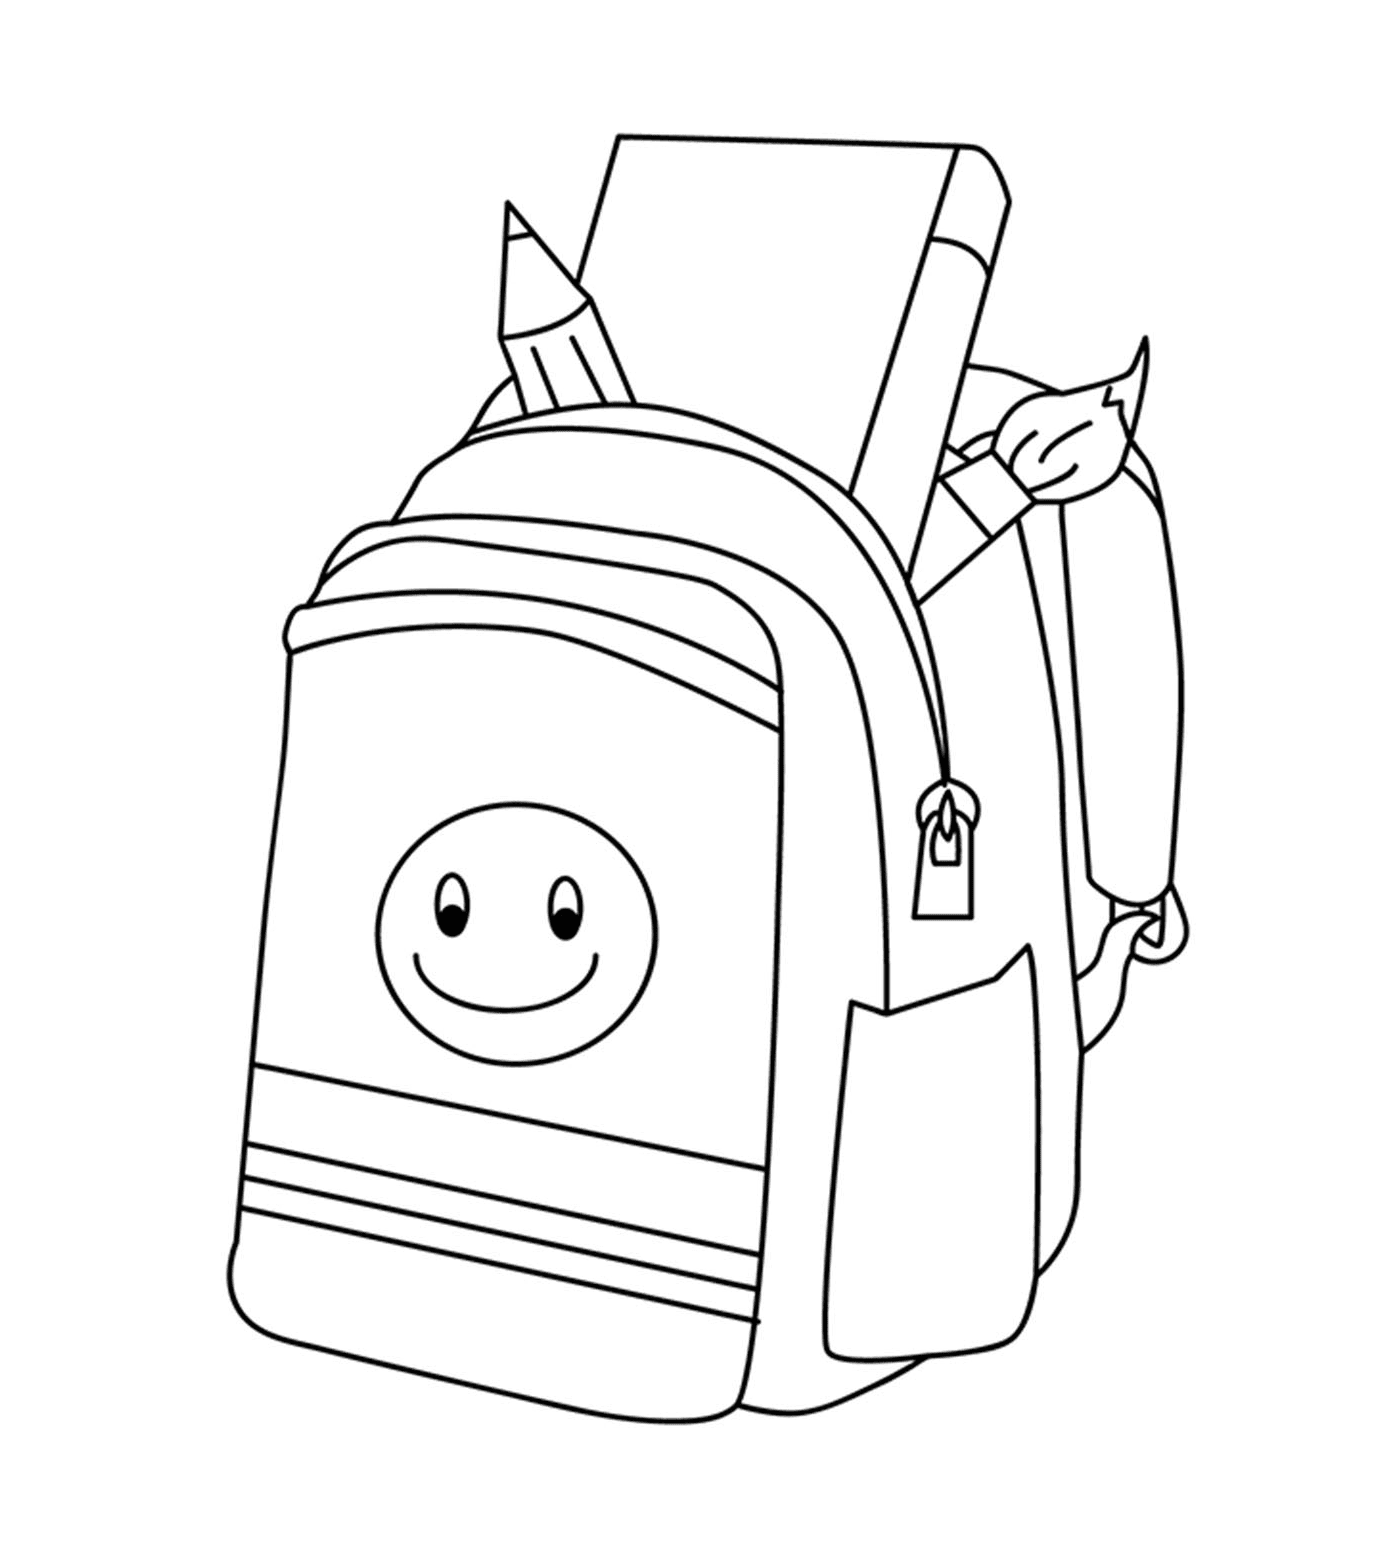  背包回学校 